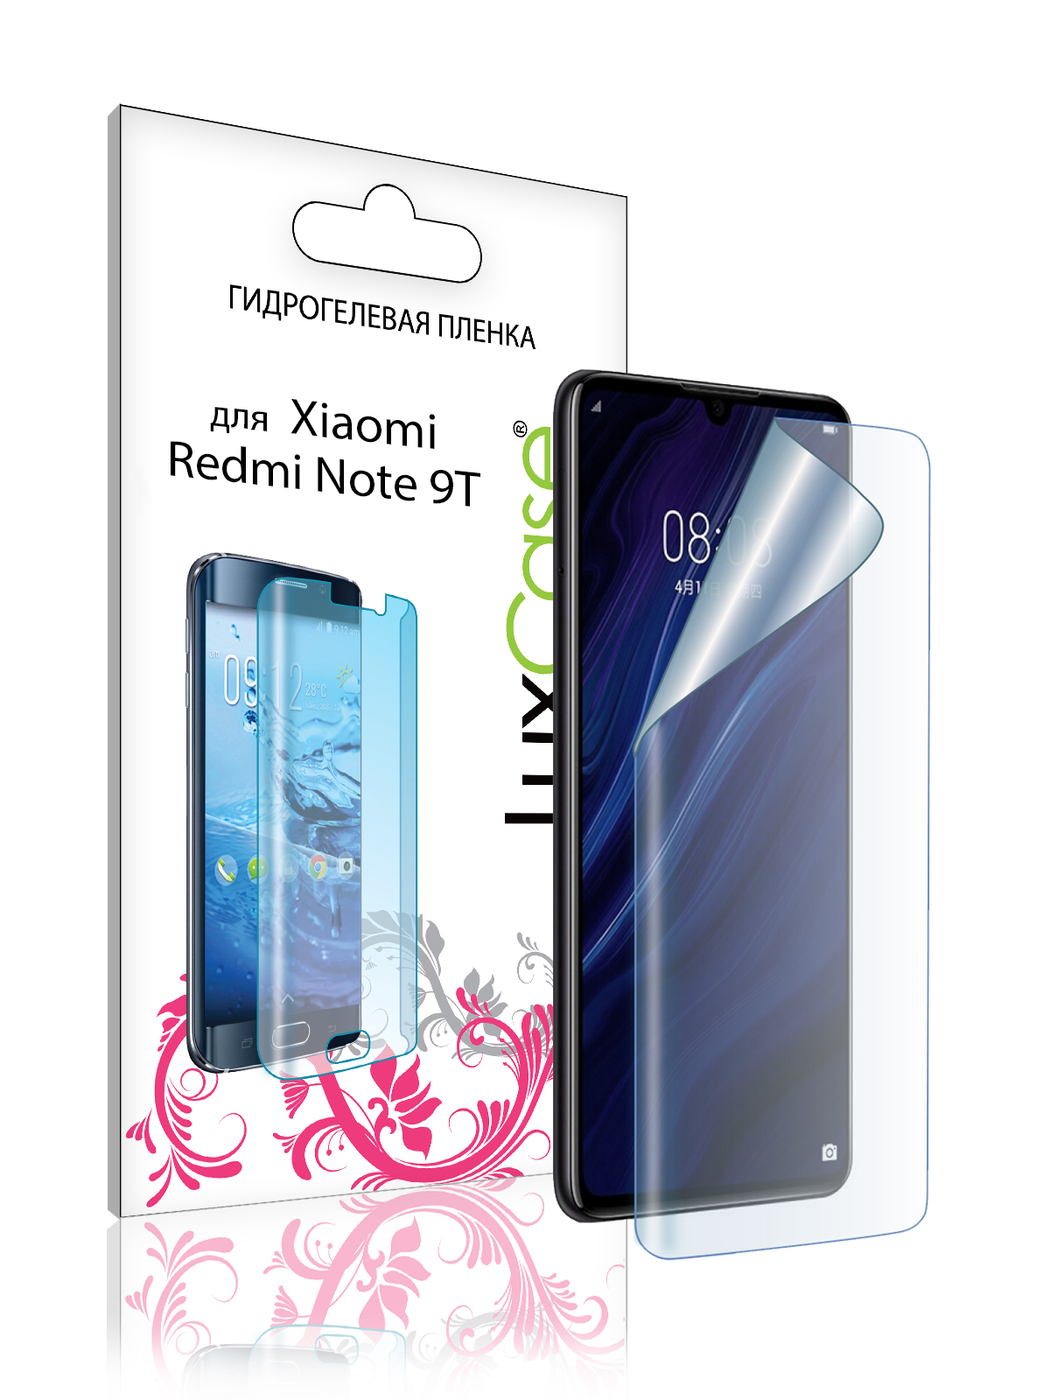 Пленка гидрогелевая LuxCase для Xiaomi Redmi Note 9T 0.14mm Front Transparent 86097 гидрогелевая пленка luxcase для xiaomi redmi note 9t 0 14mm front transparent 86097